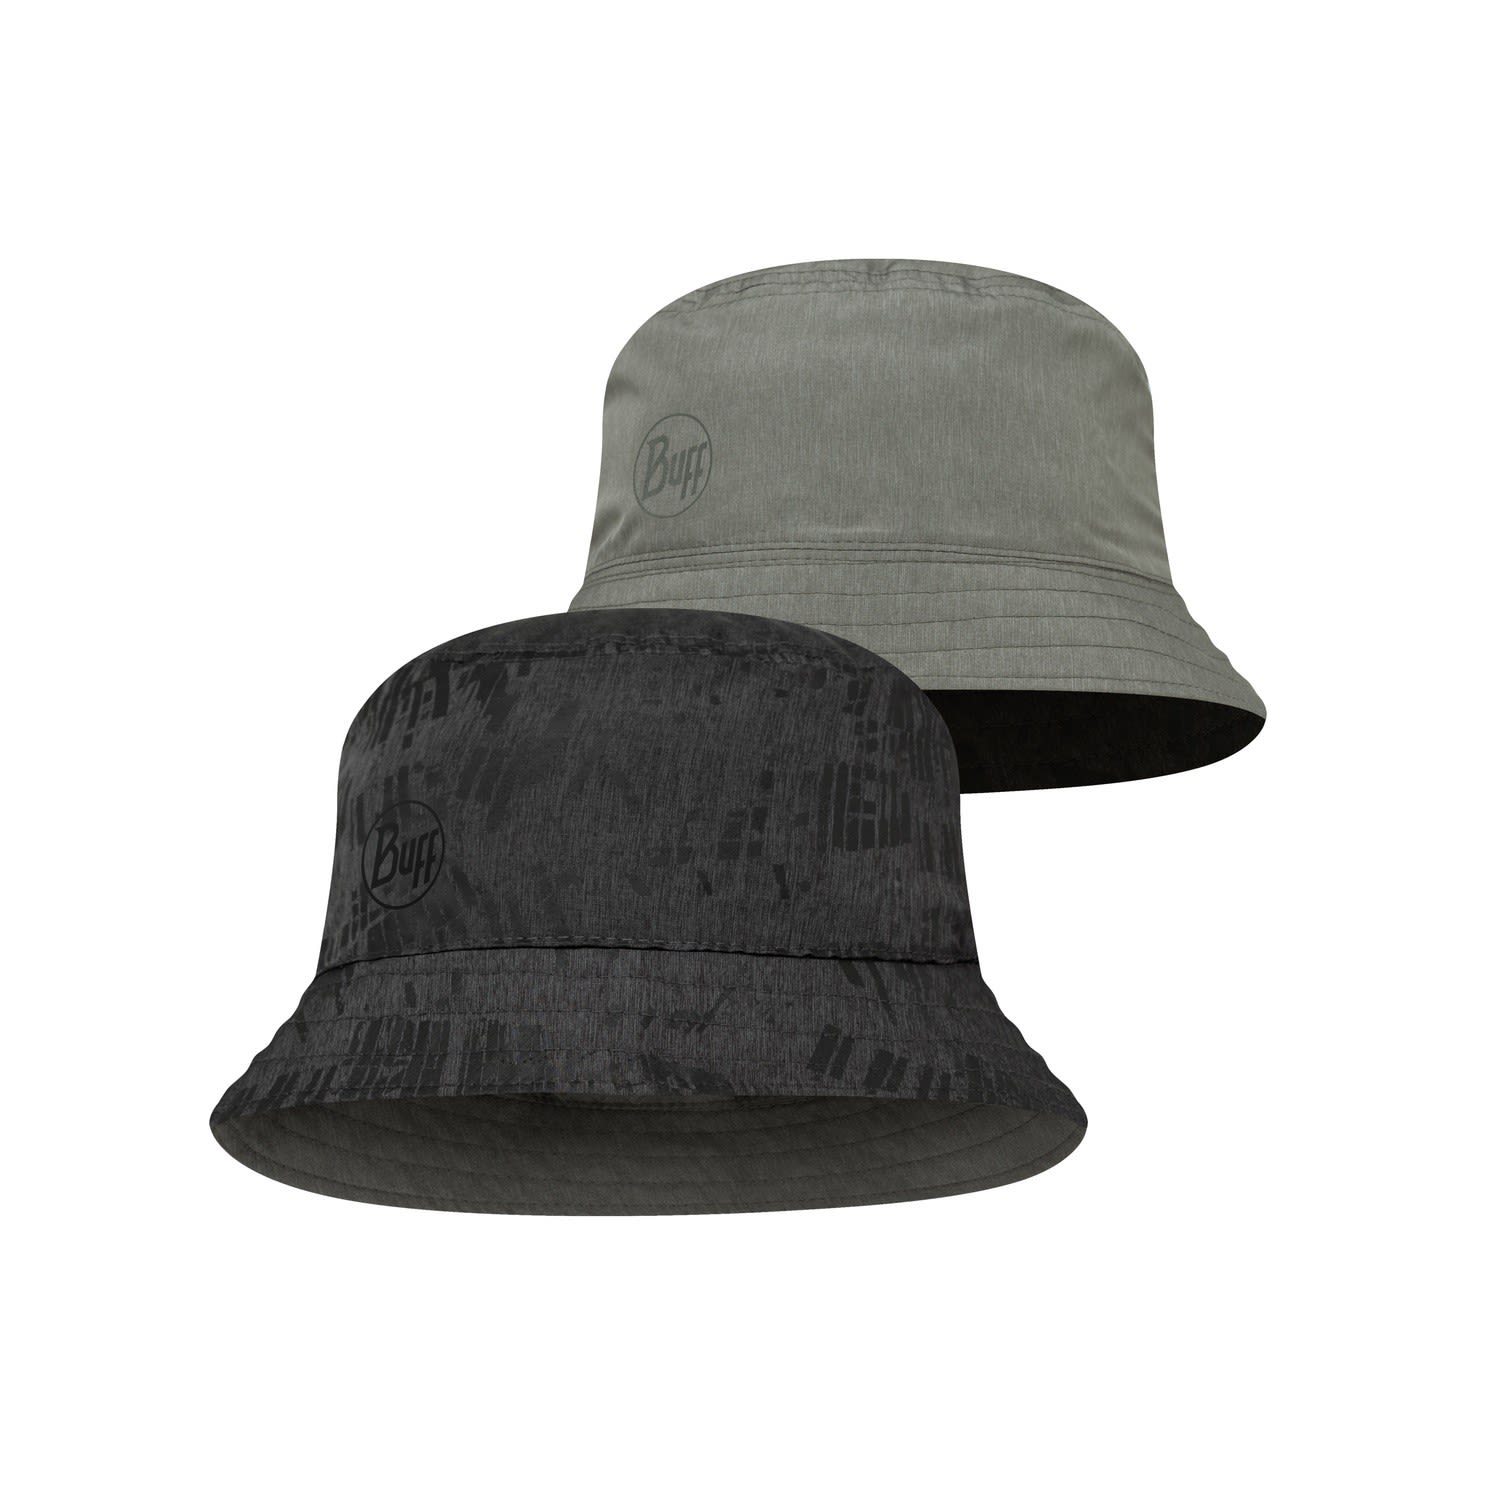 Buff Travel Bucket Hat Grau - Schwarz- Caps und Hte- Grsse S-M - Farbe Gline Black - Grey unter Buff